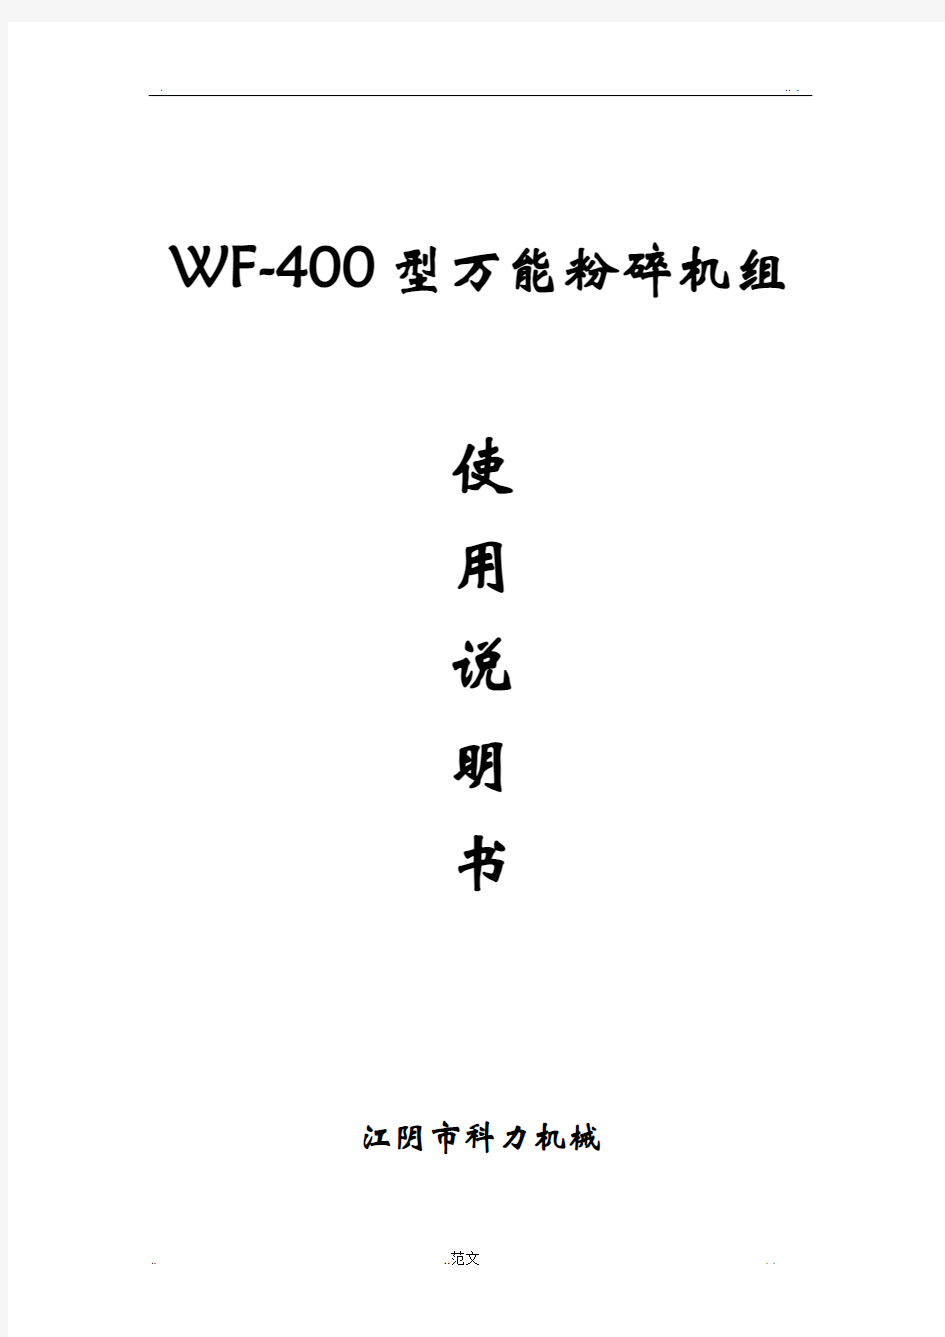 WF-400万能粉碎机组使用说明书